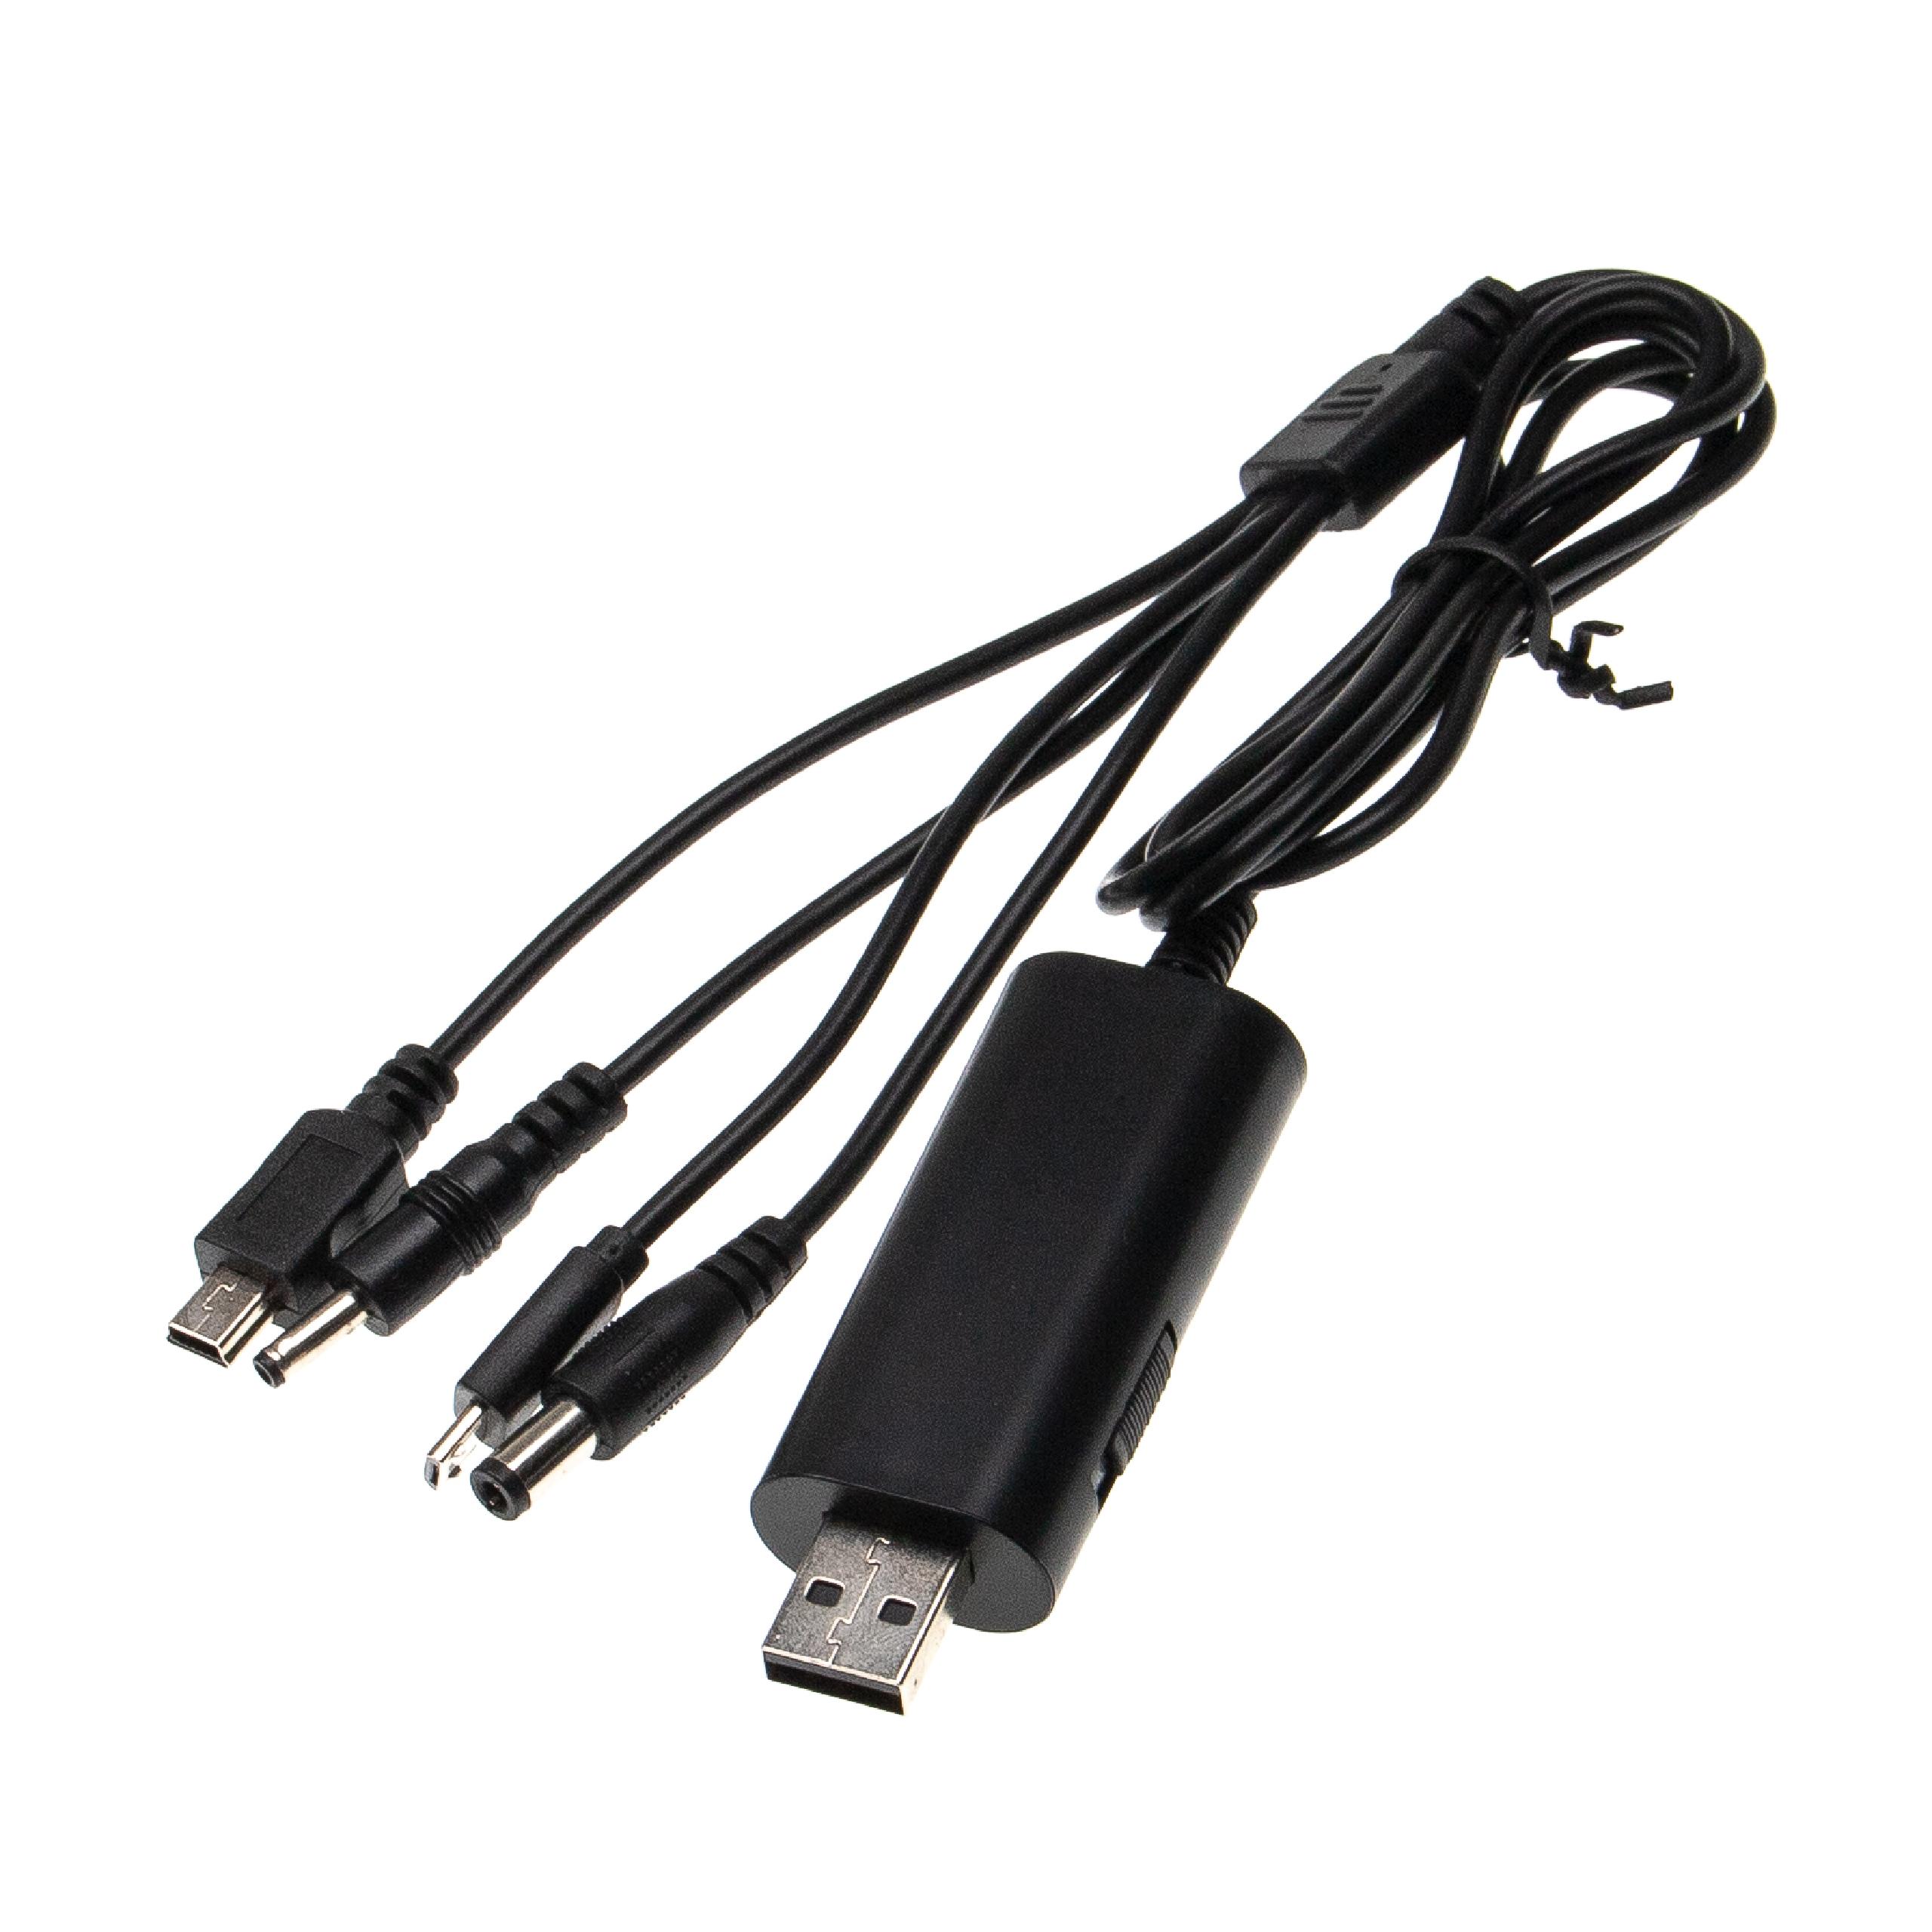 vhbw cavo USB multiplo universale compatibile con diversi dispositivi, ad es. telefoni, cellulari, smartphone 